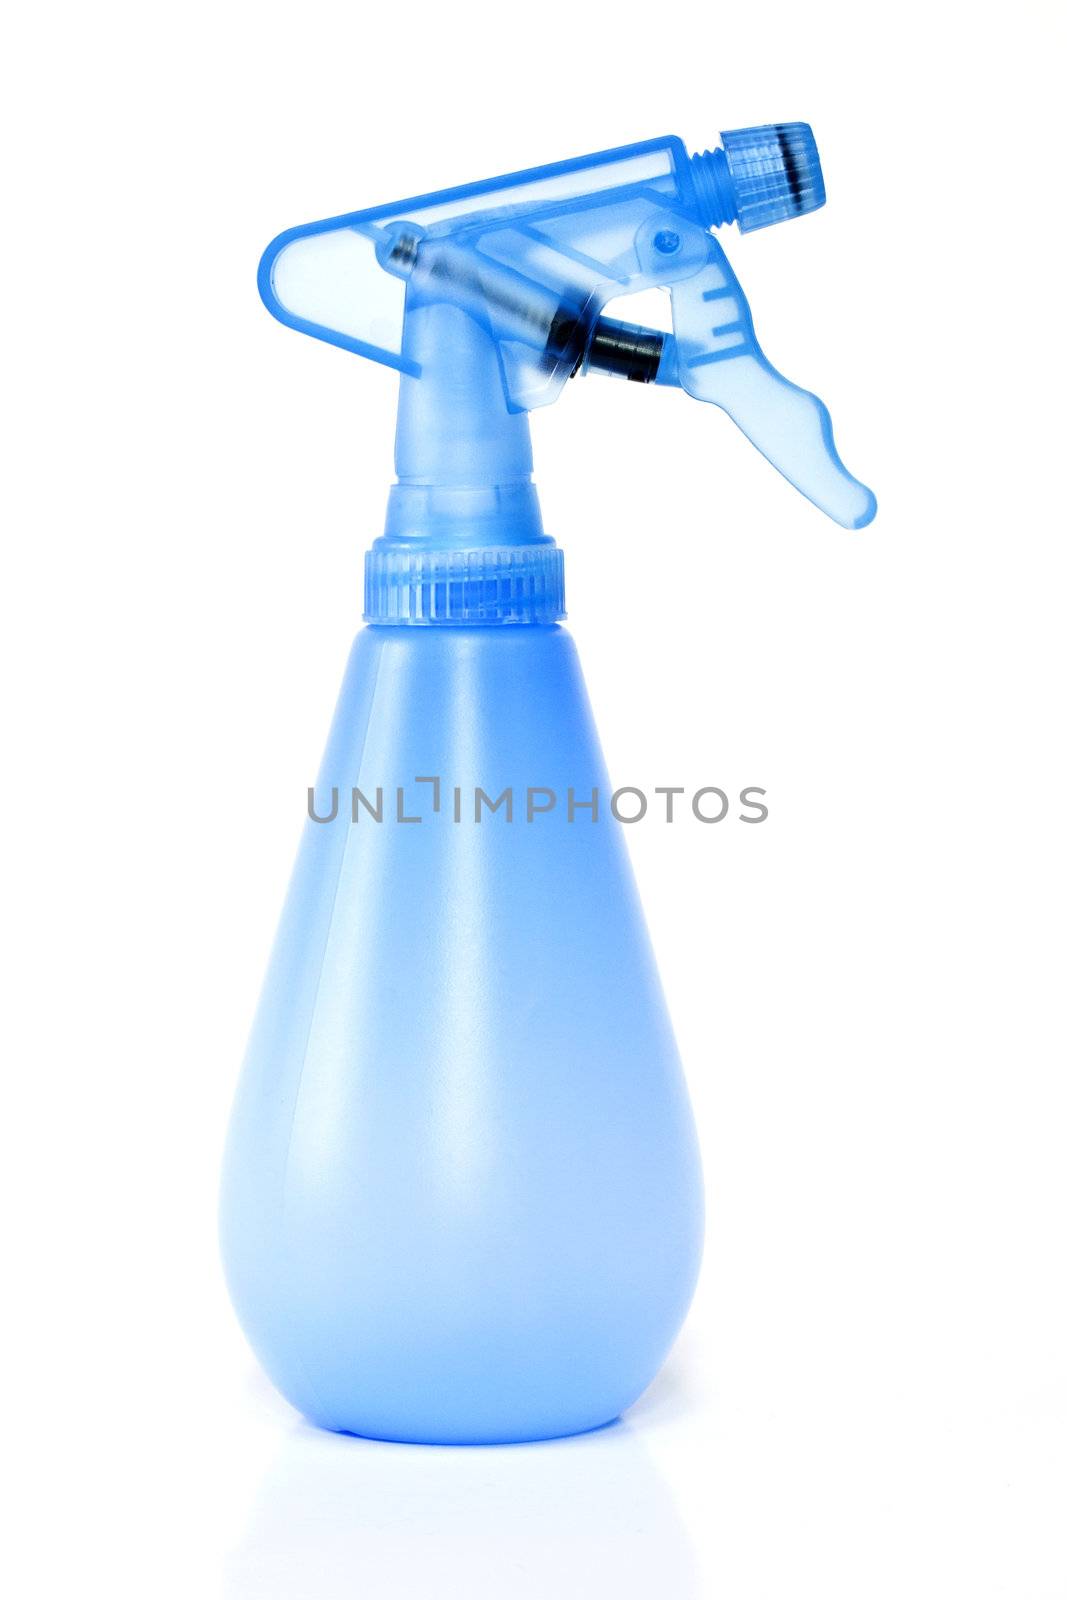 Blue spray bottle isolated on white background